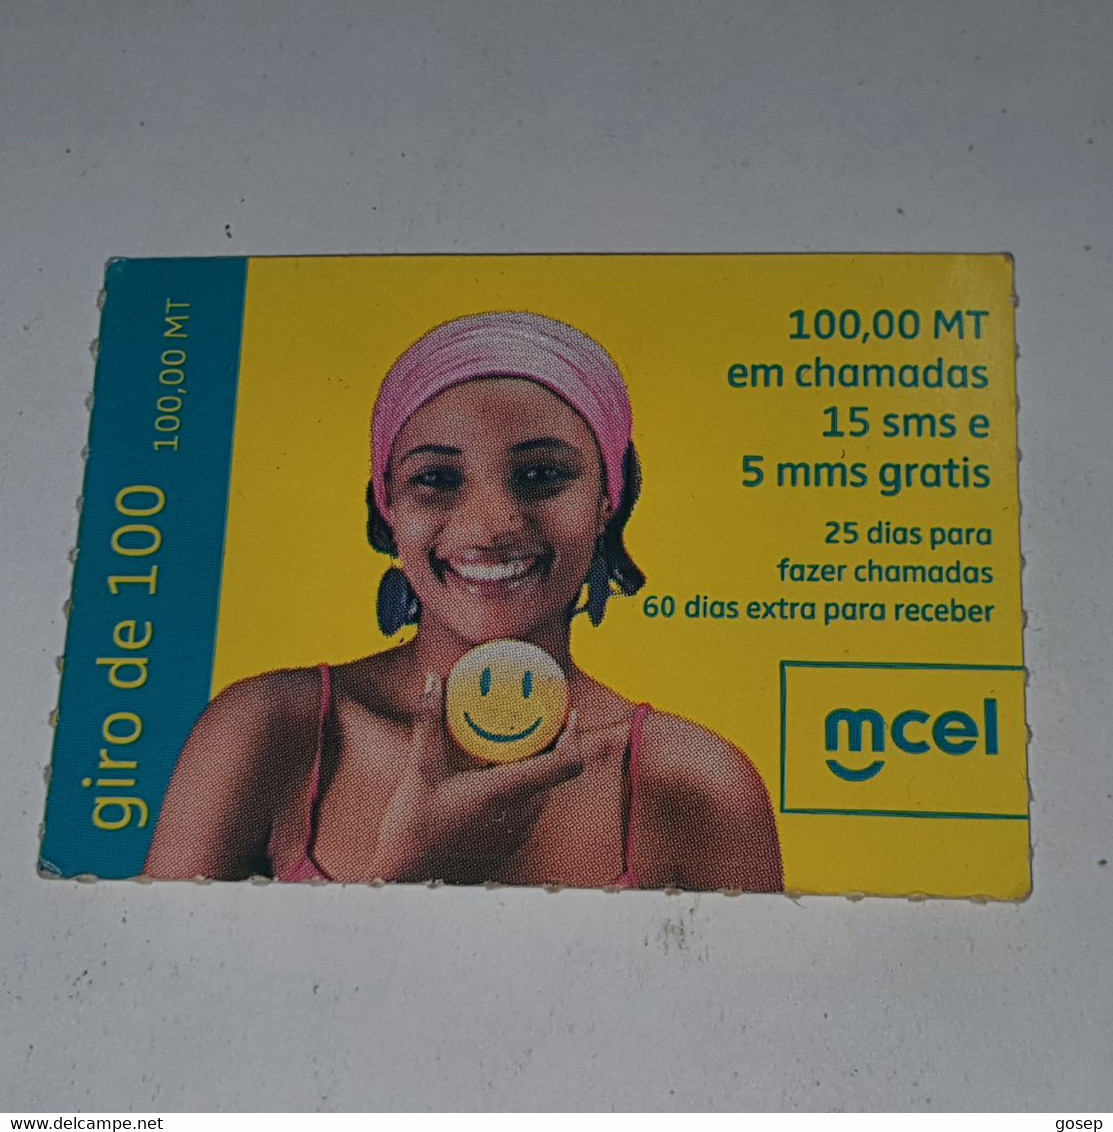 Mozambique-(MZ-MCE-REC-0007B)-(16)-Giro De 100-(55121776784599)-(19/5/2011)-used Card - Mozambico